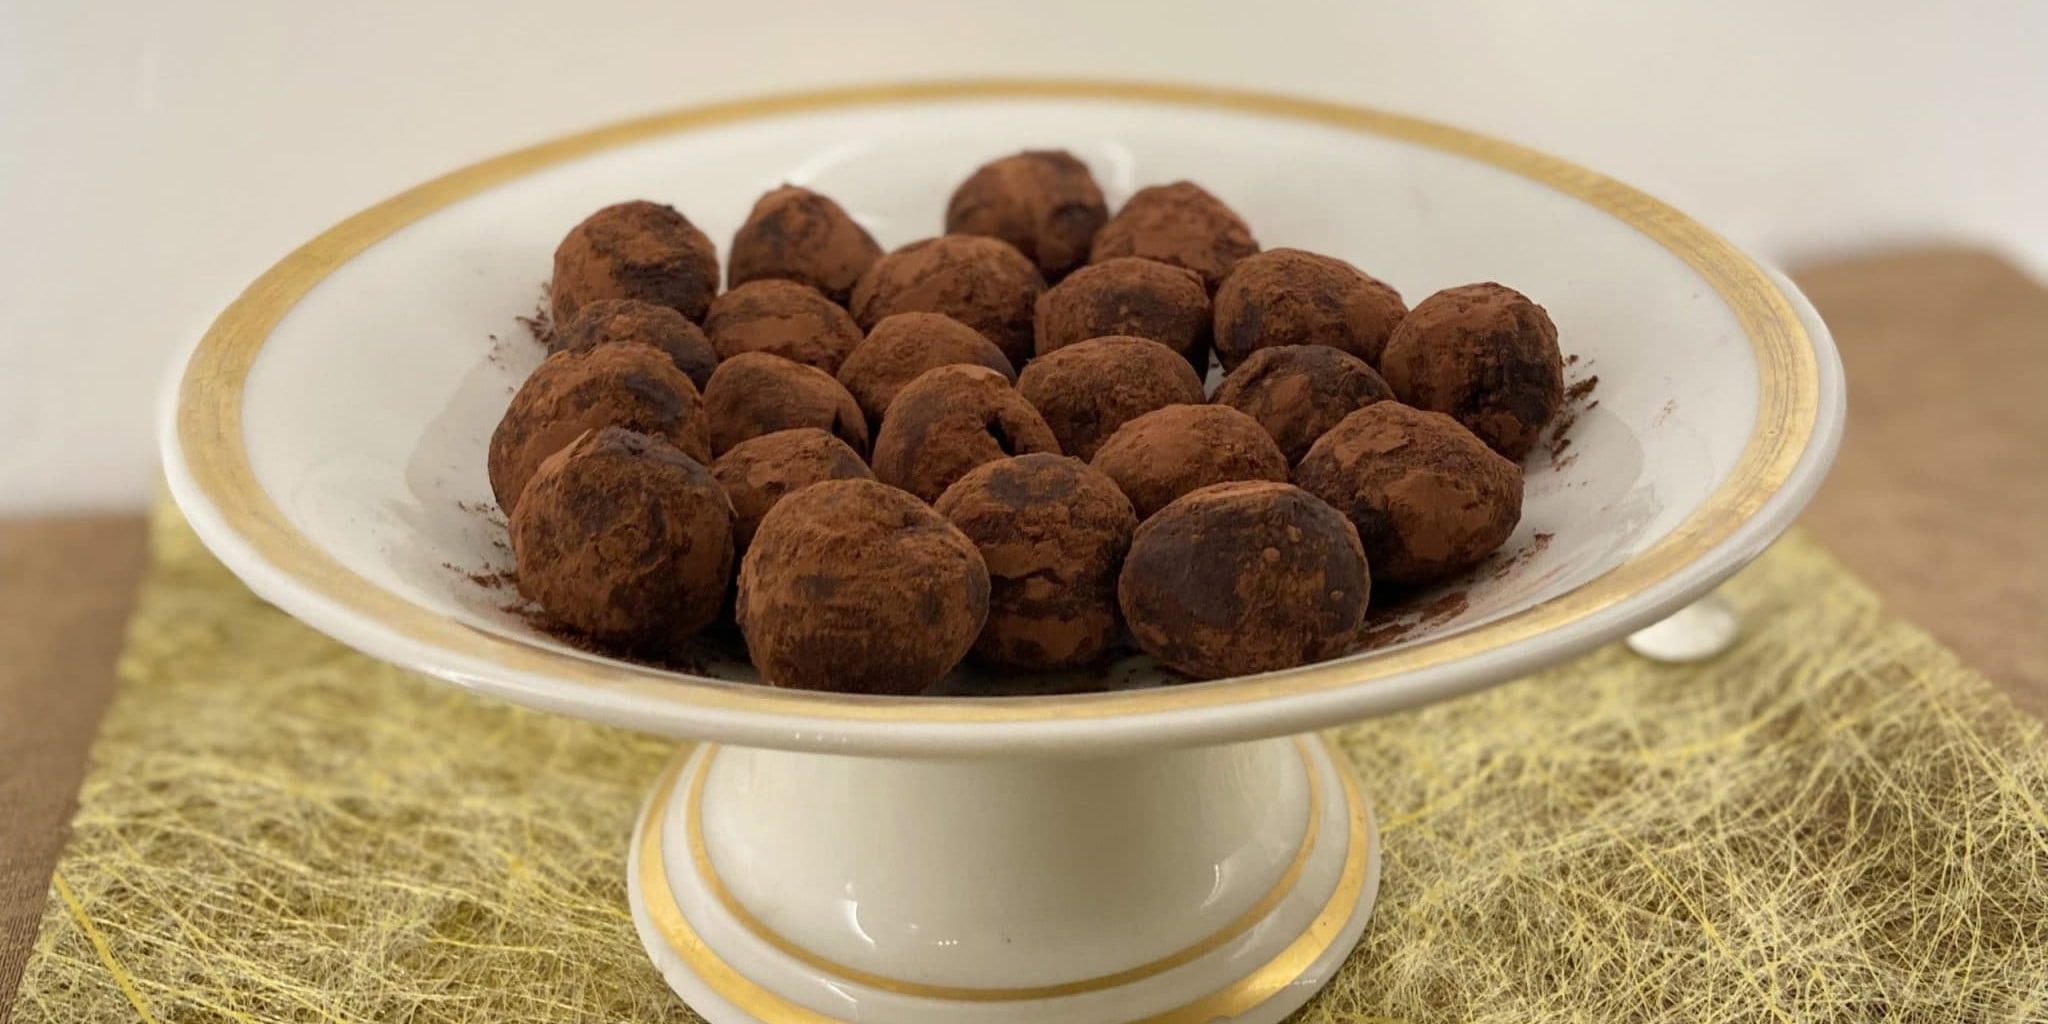 Cuisine de noël avec les enfants : les truffes au chocolat sans oeufs 